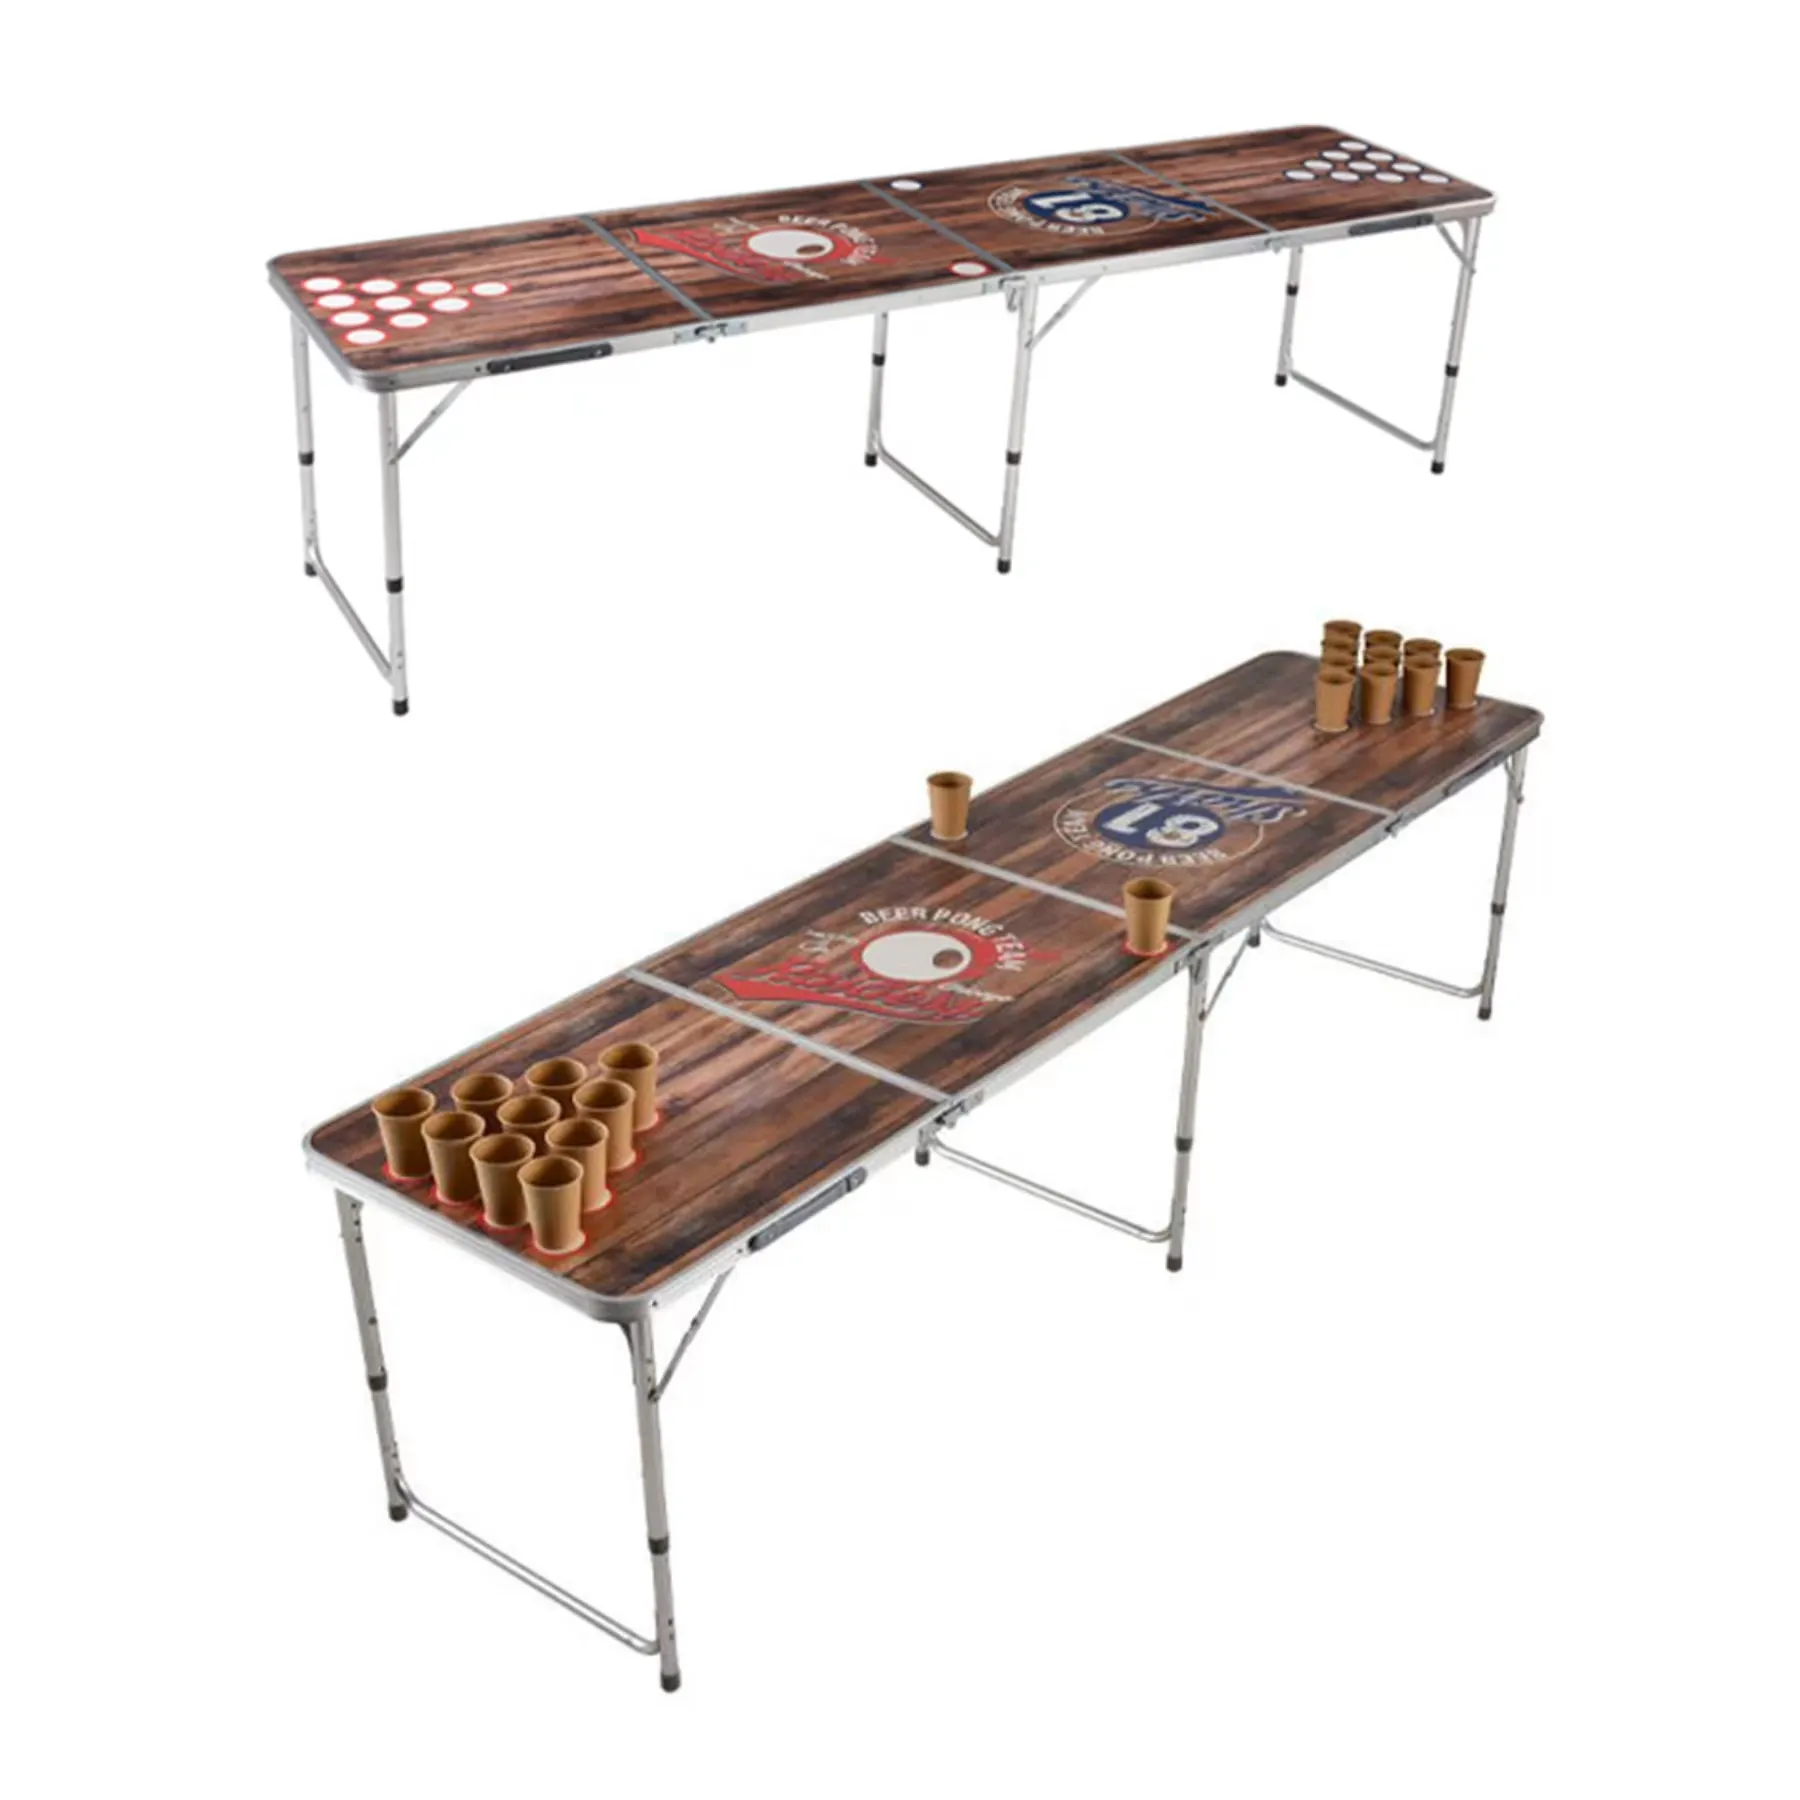 HISPEED tavolo pieghevole da campeggio portatile in alluminio resistente personalizzato da 8 piedi